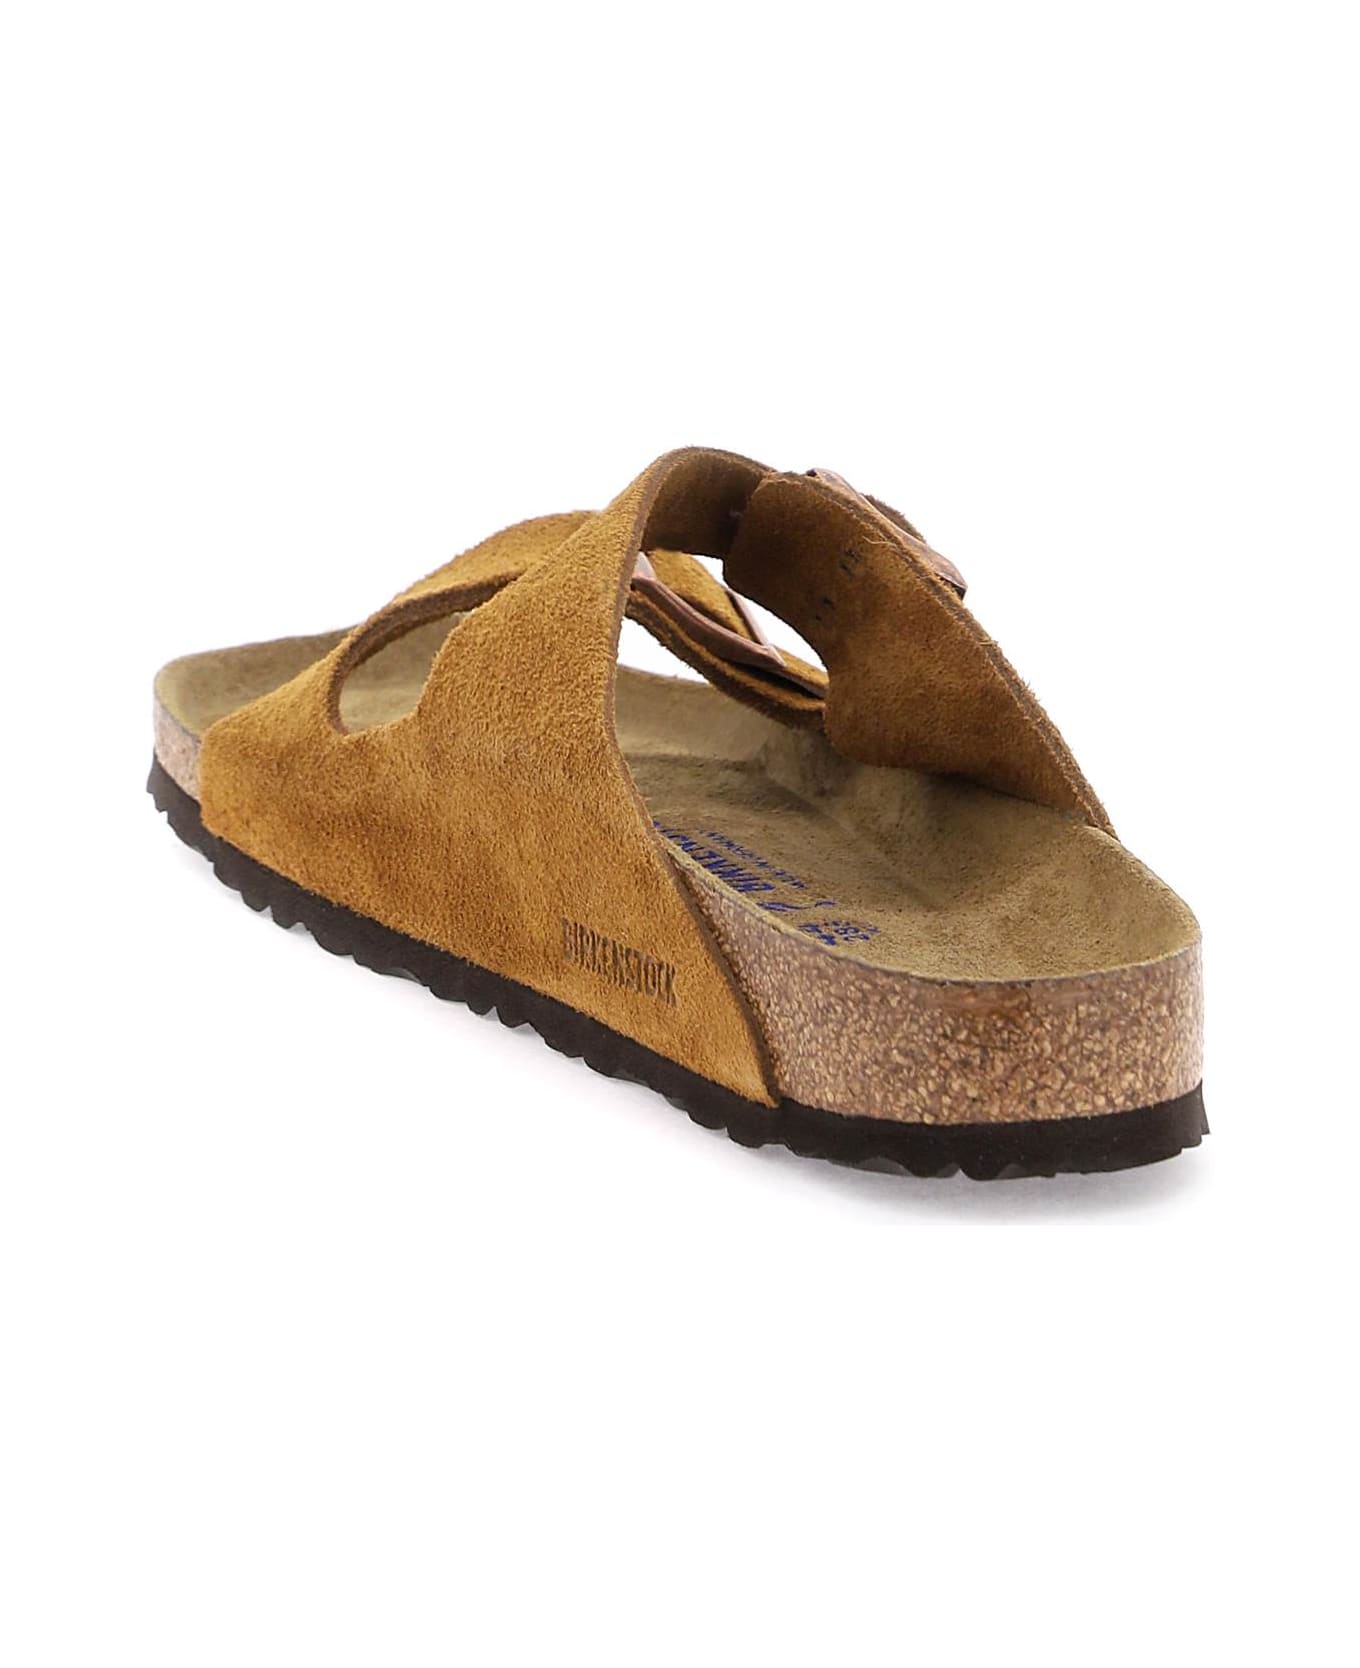 Birkenstock Arizona Suede Sandals - Mink